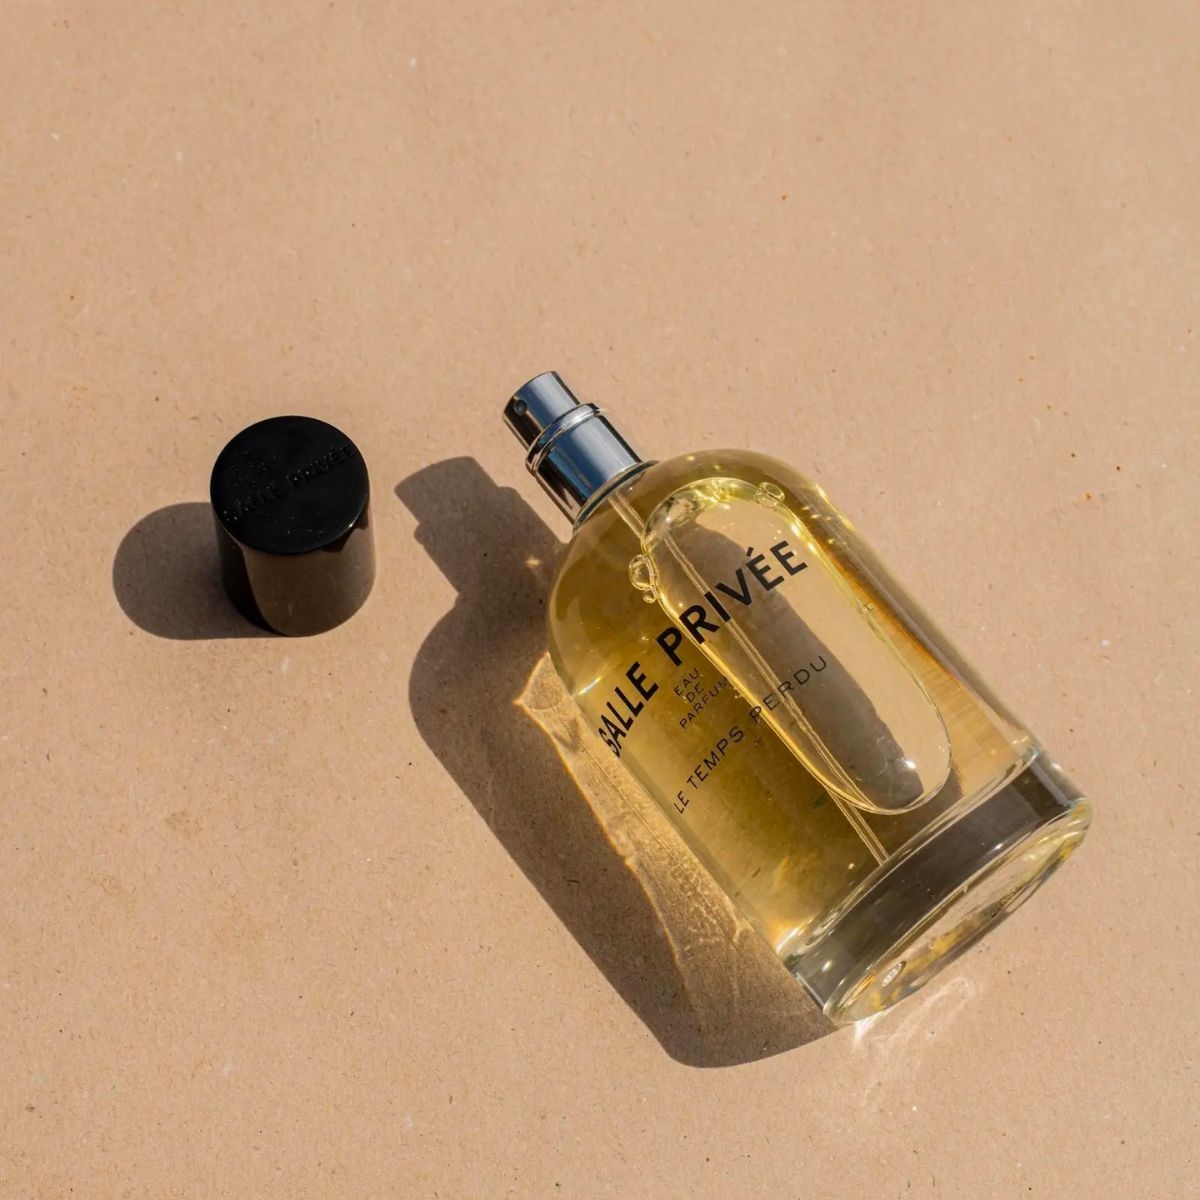 Image of Le temps Perdu eau de parfum 100 ml by the perfume brand Salle Privee